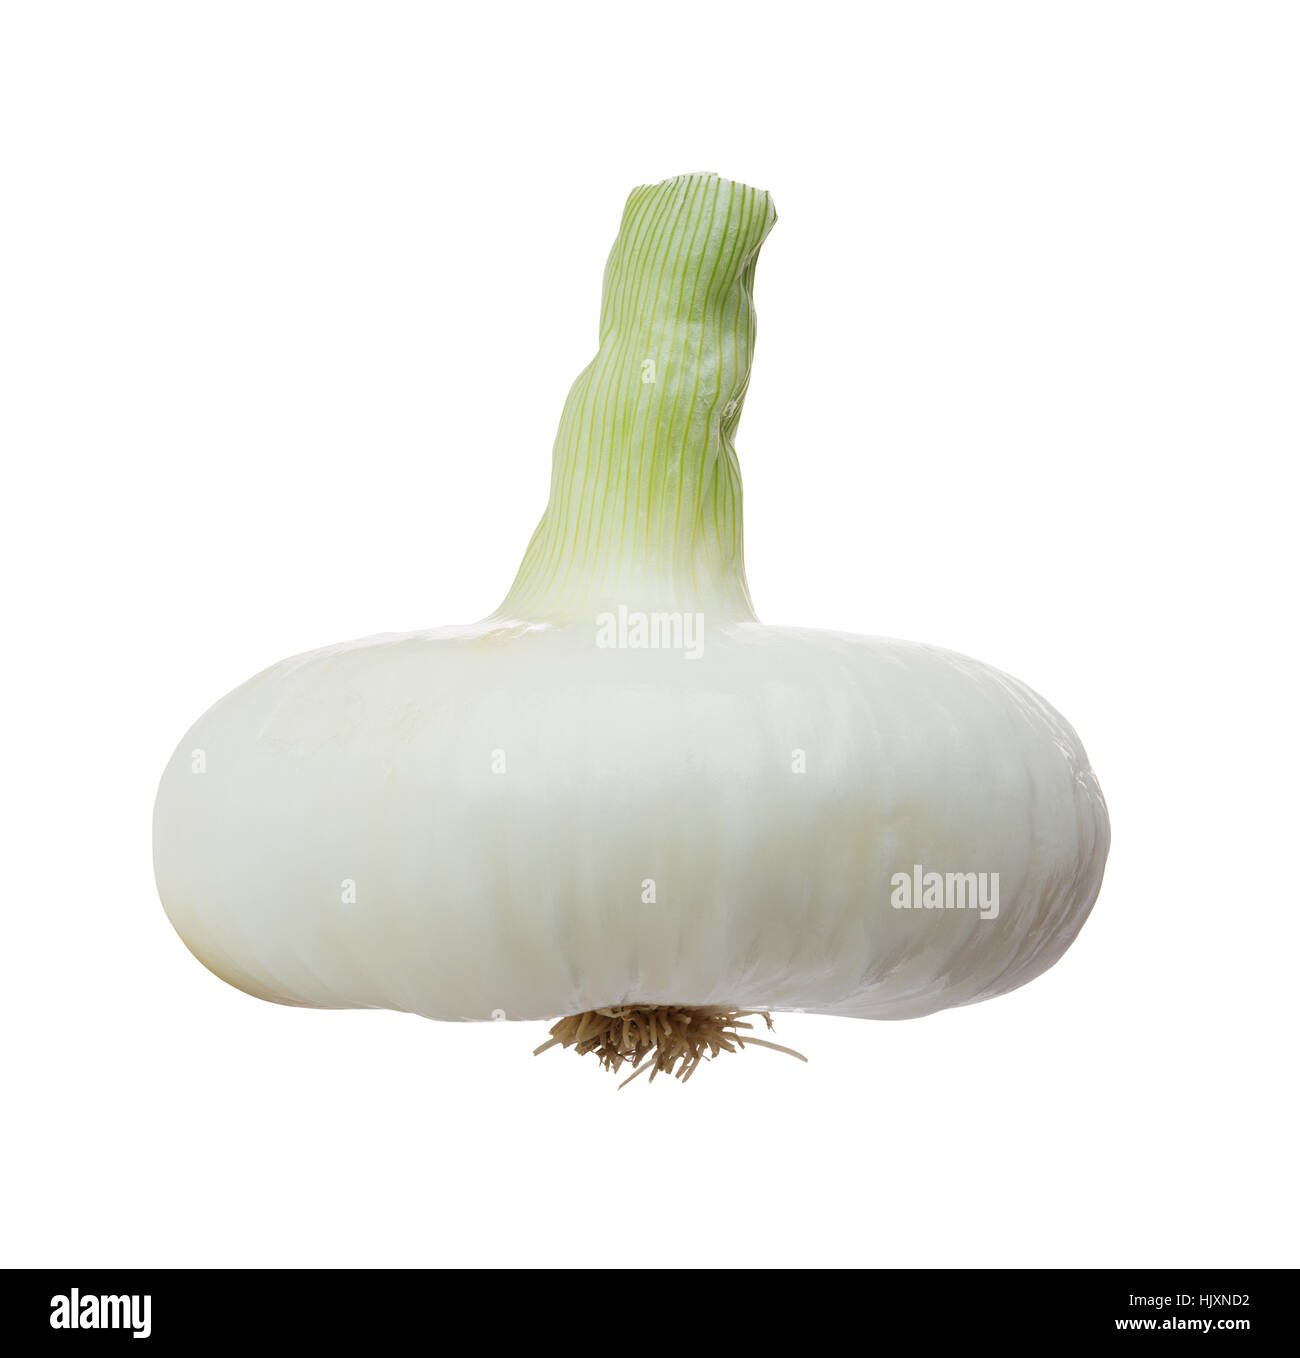 fresh white onion isolated on white background Stock Photo